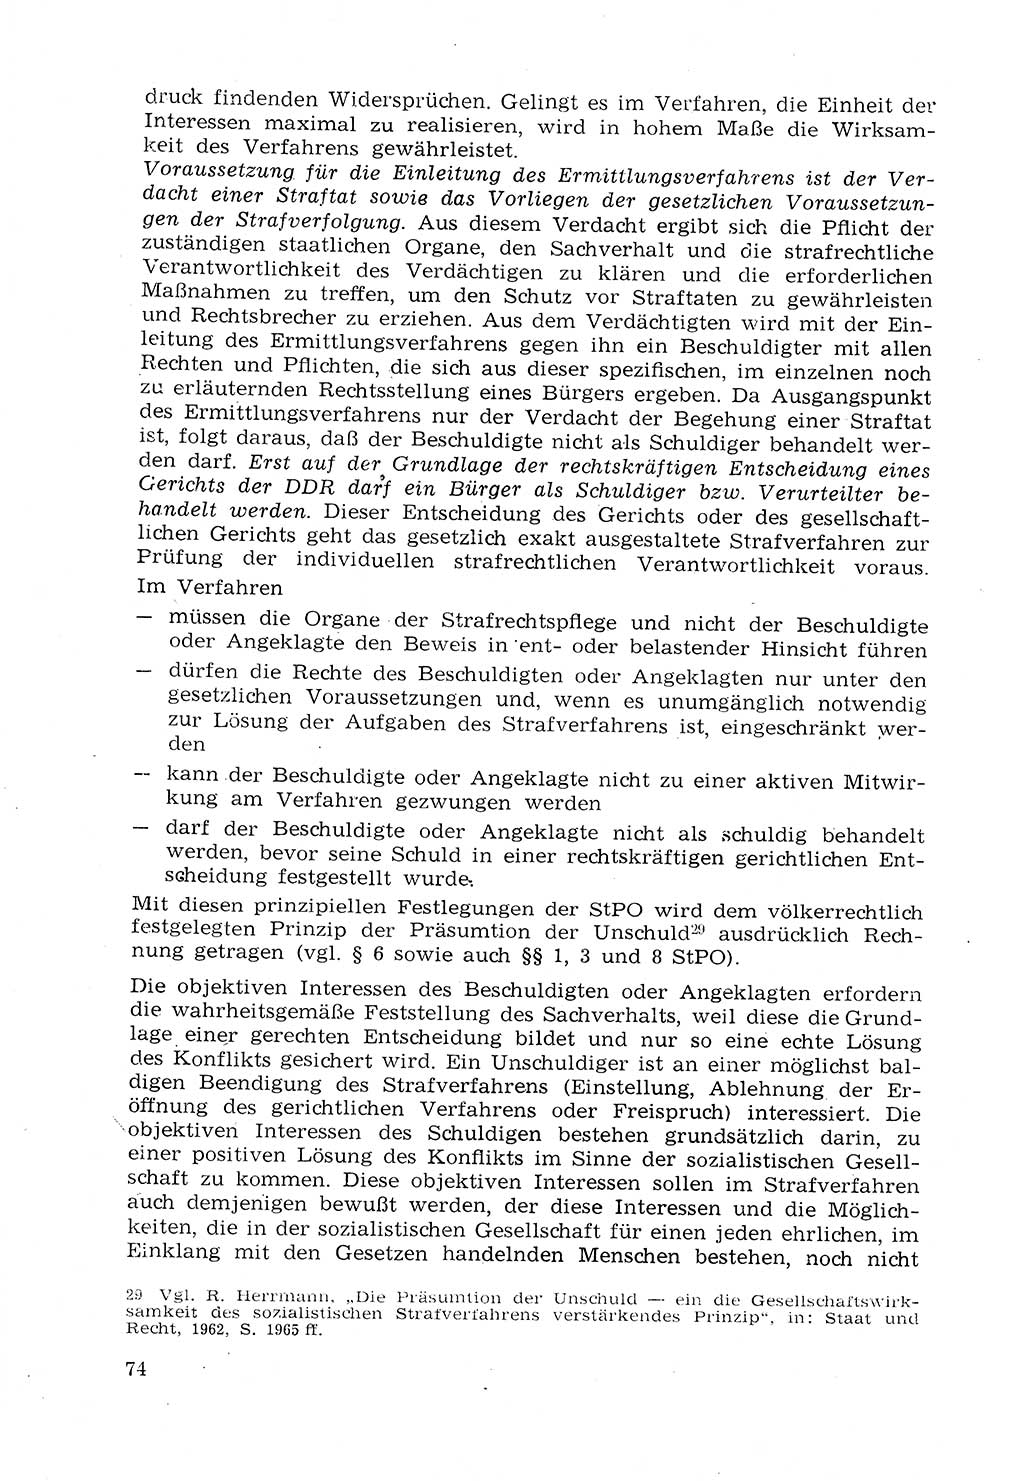 Strafprozeßrecht der DDR (Deutsche Demokratische Republik), Lehrmaterial 1969, Seite 74 (Strafprozeßr. DDR Lehrmat. 1969, S. 74)